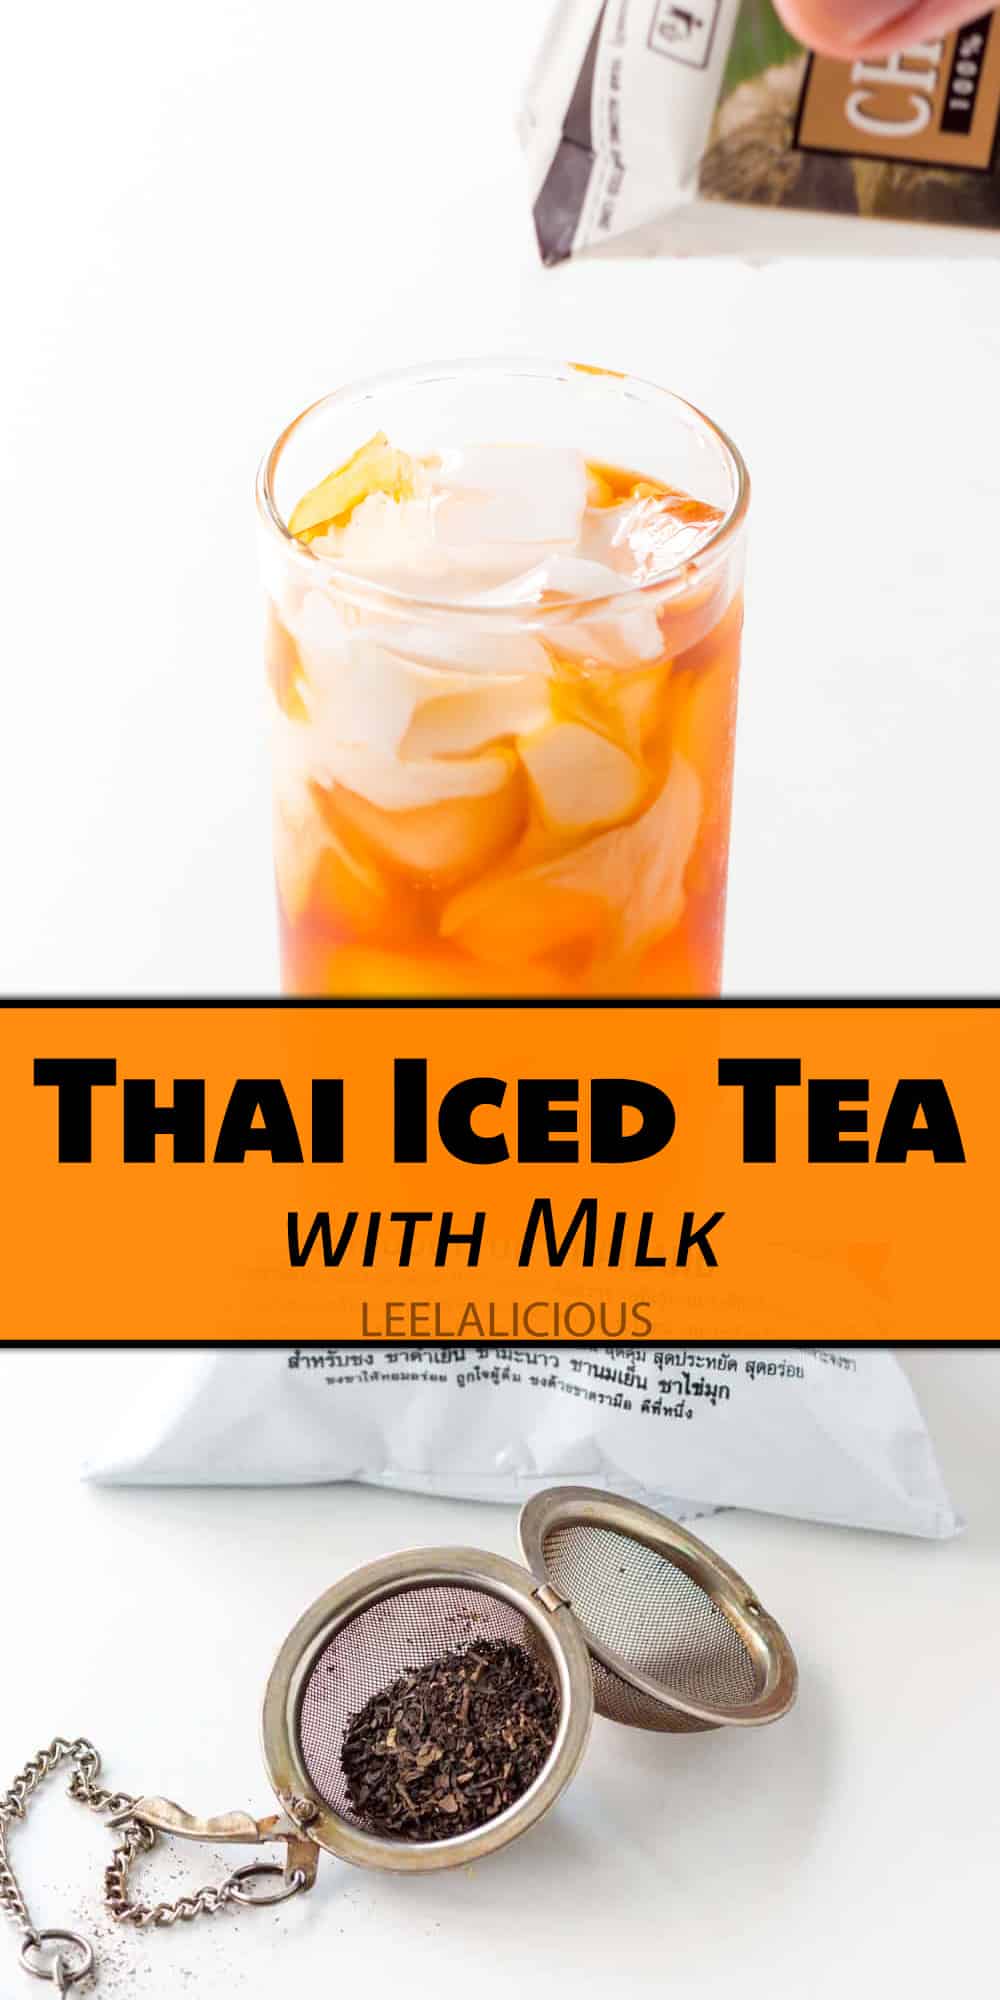 Thai Iced Tea with Milk